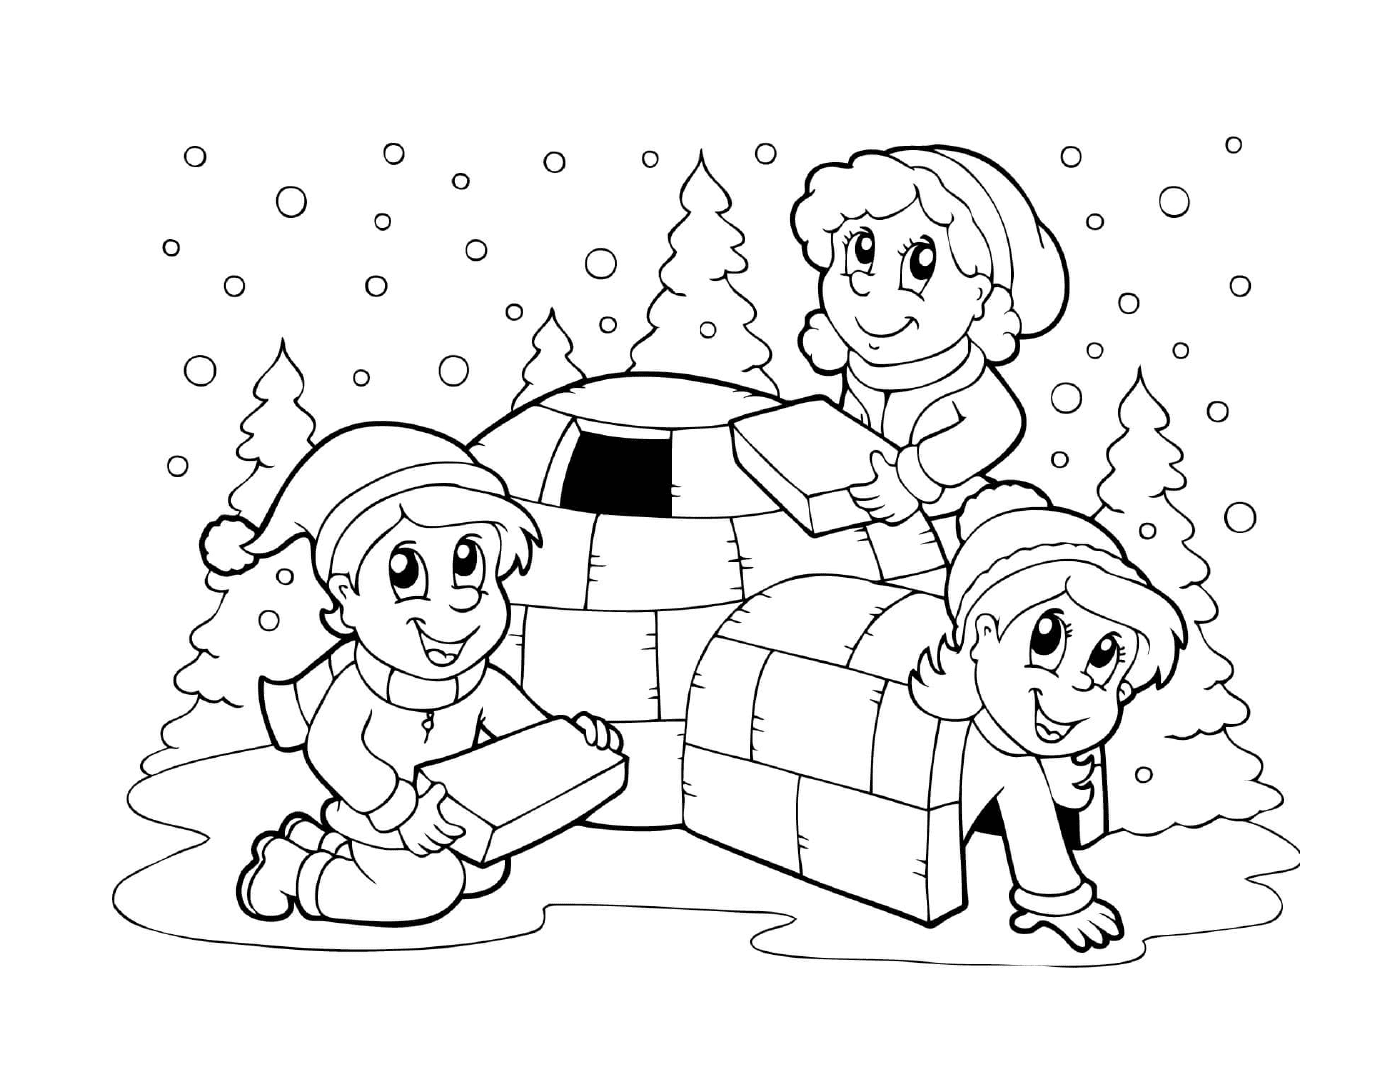  बच्चे सर्दियों में आईगली निर्माण करते हैं 